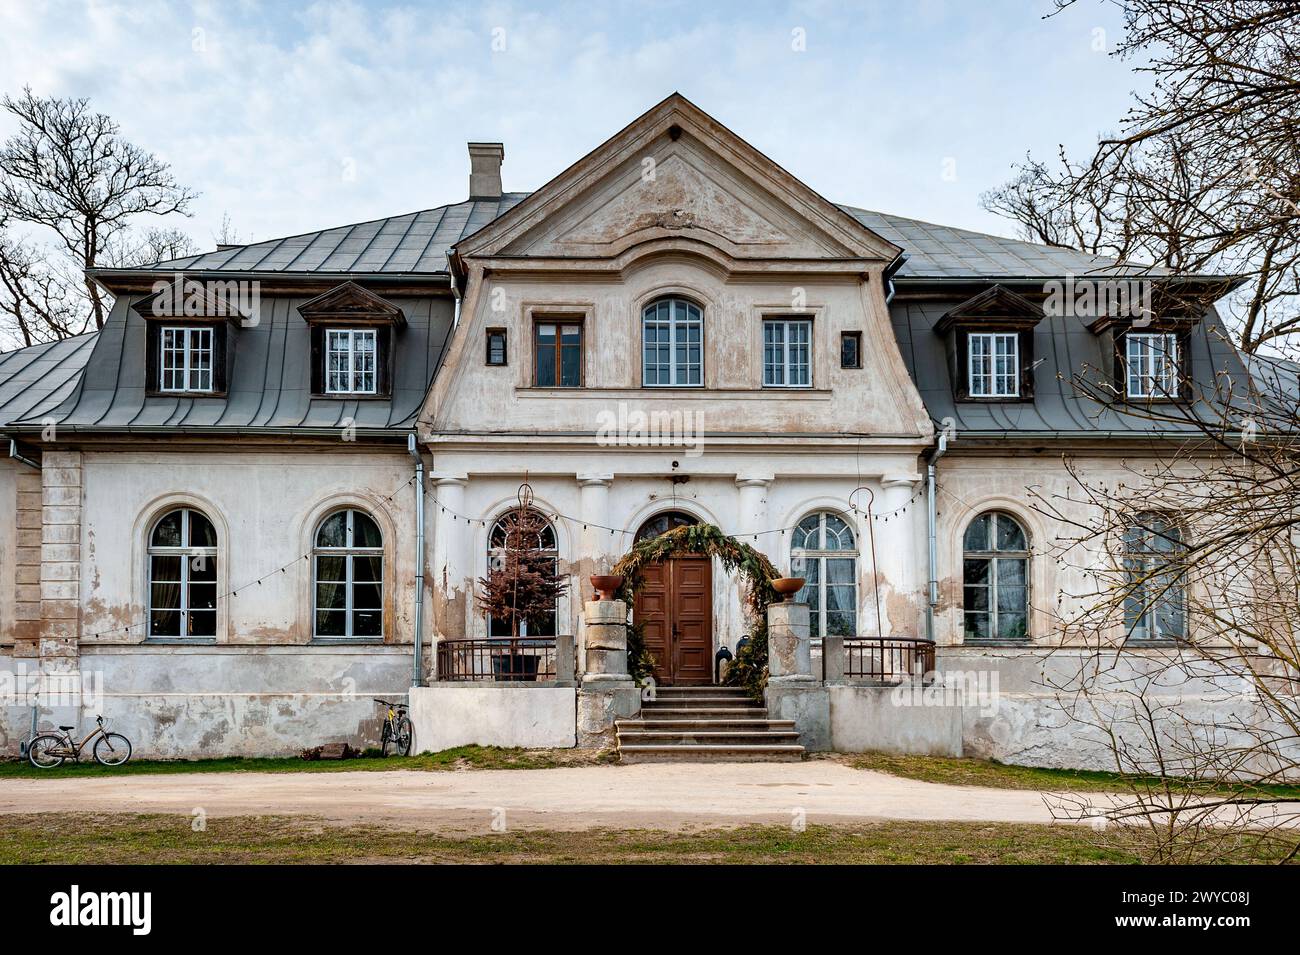 Das Herrenhaus Abgunste ist ein Kulturdenkmal von nationaler Bedeutung. Blick auf ein wunderschönes altes Herrenhaus in Lettland. Stockfoto